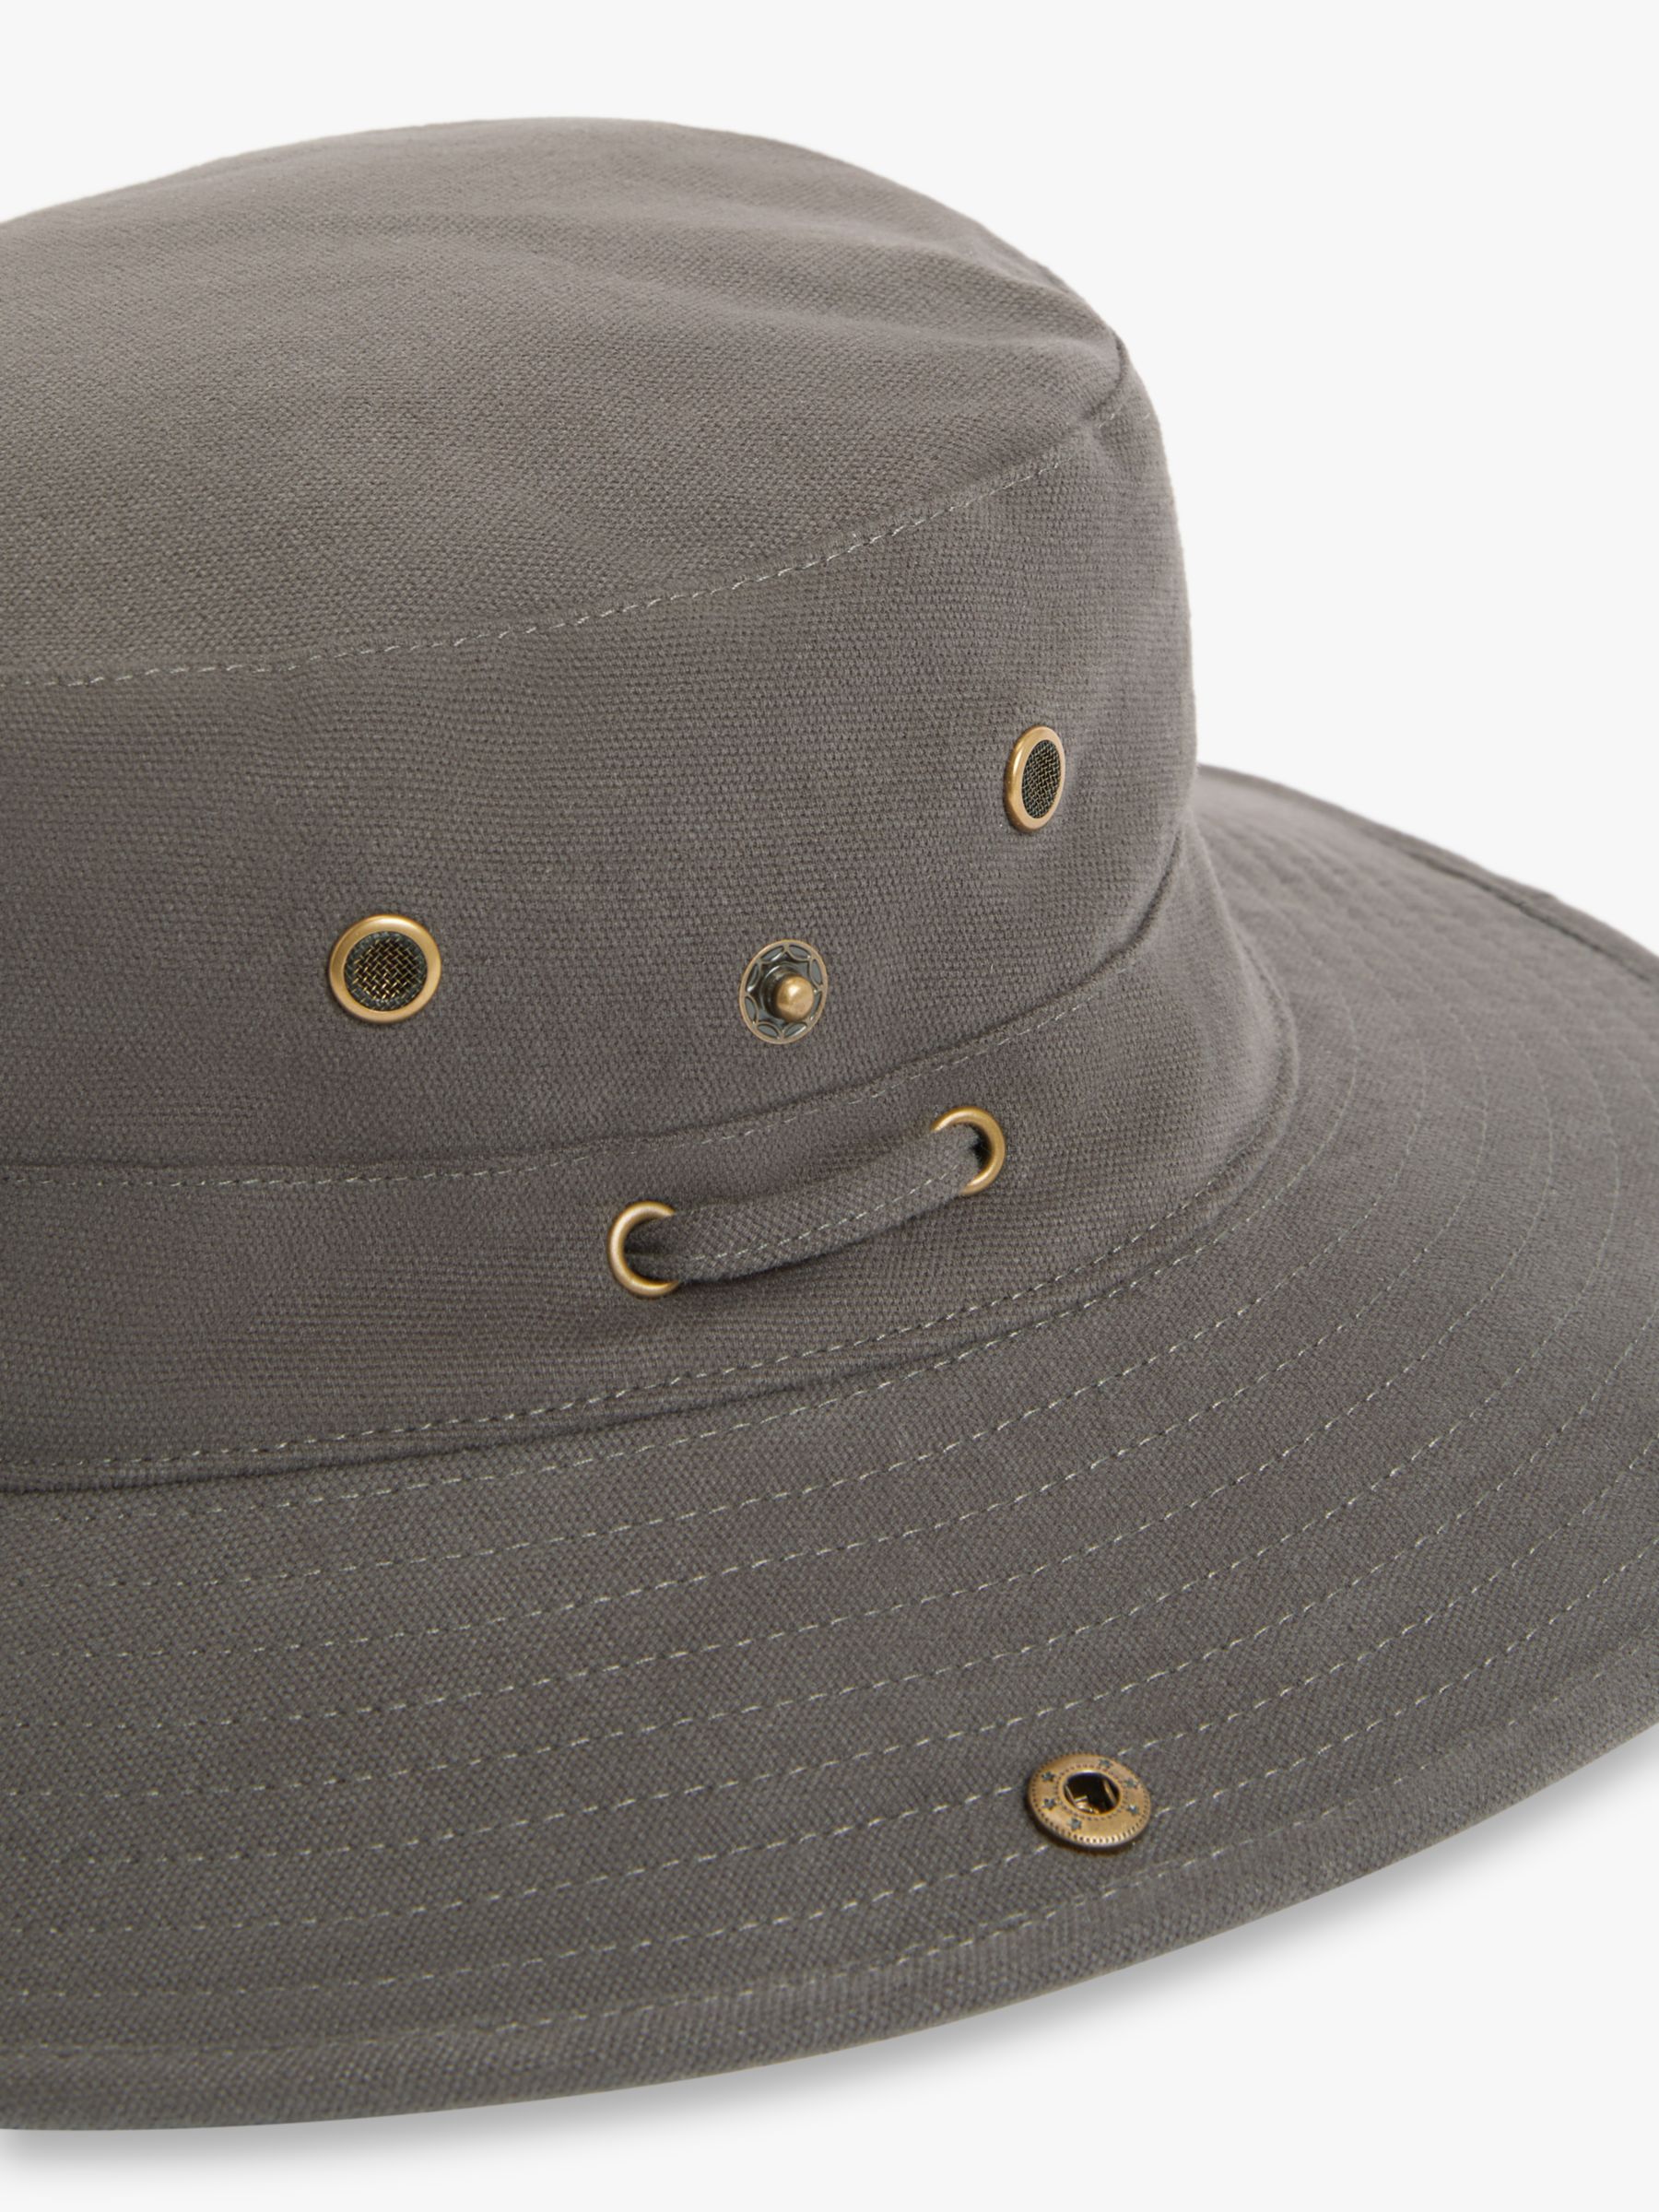 John Lewis Cotton Safari Hat, Stone at John Lewis & Partners